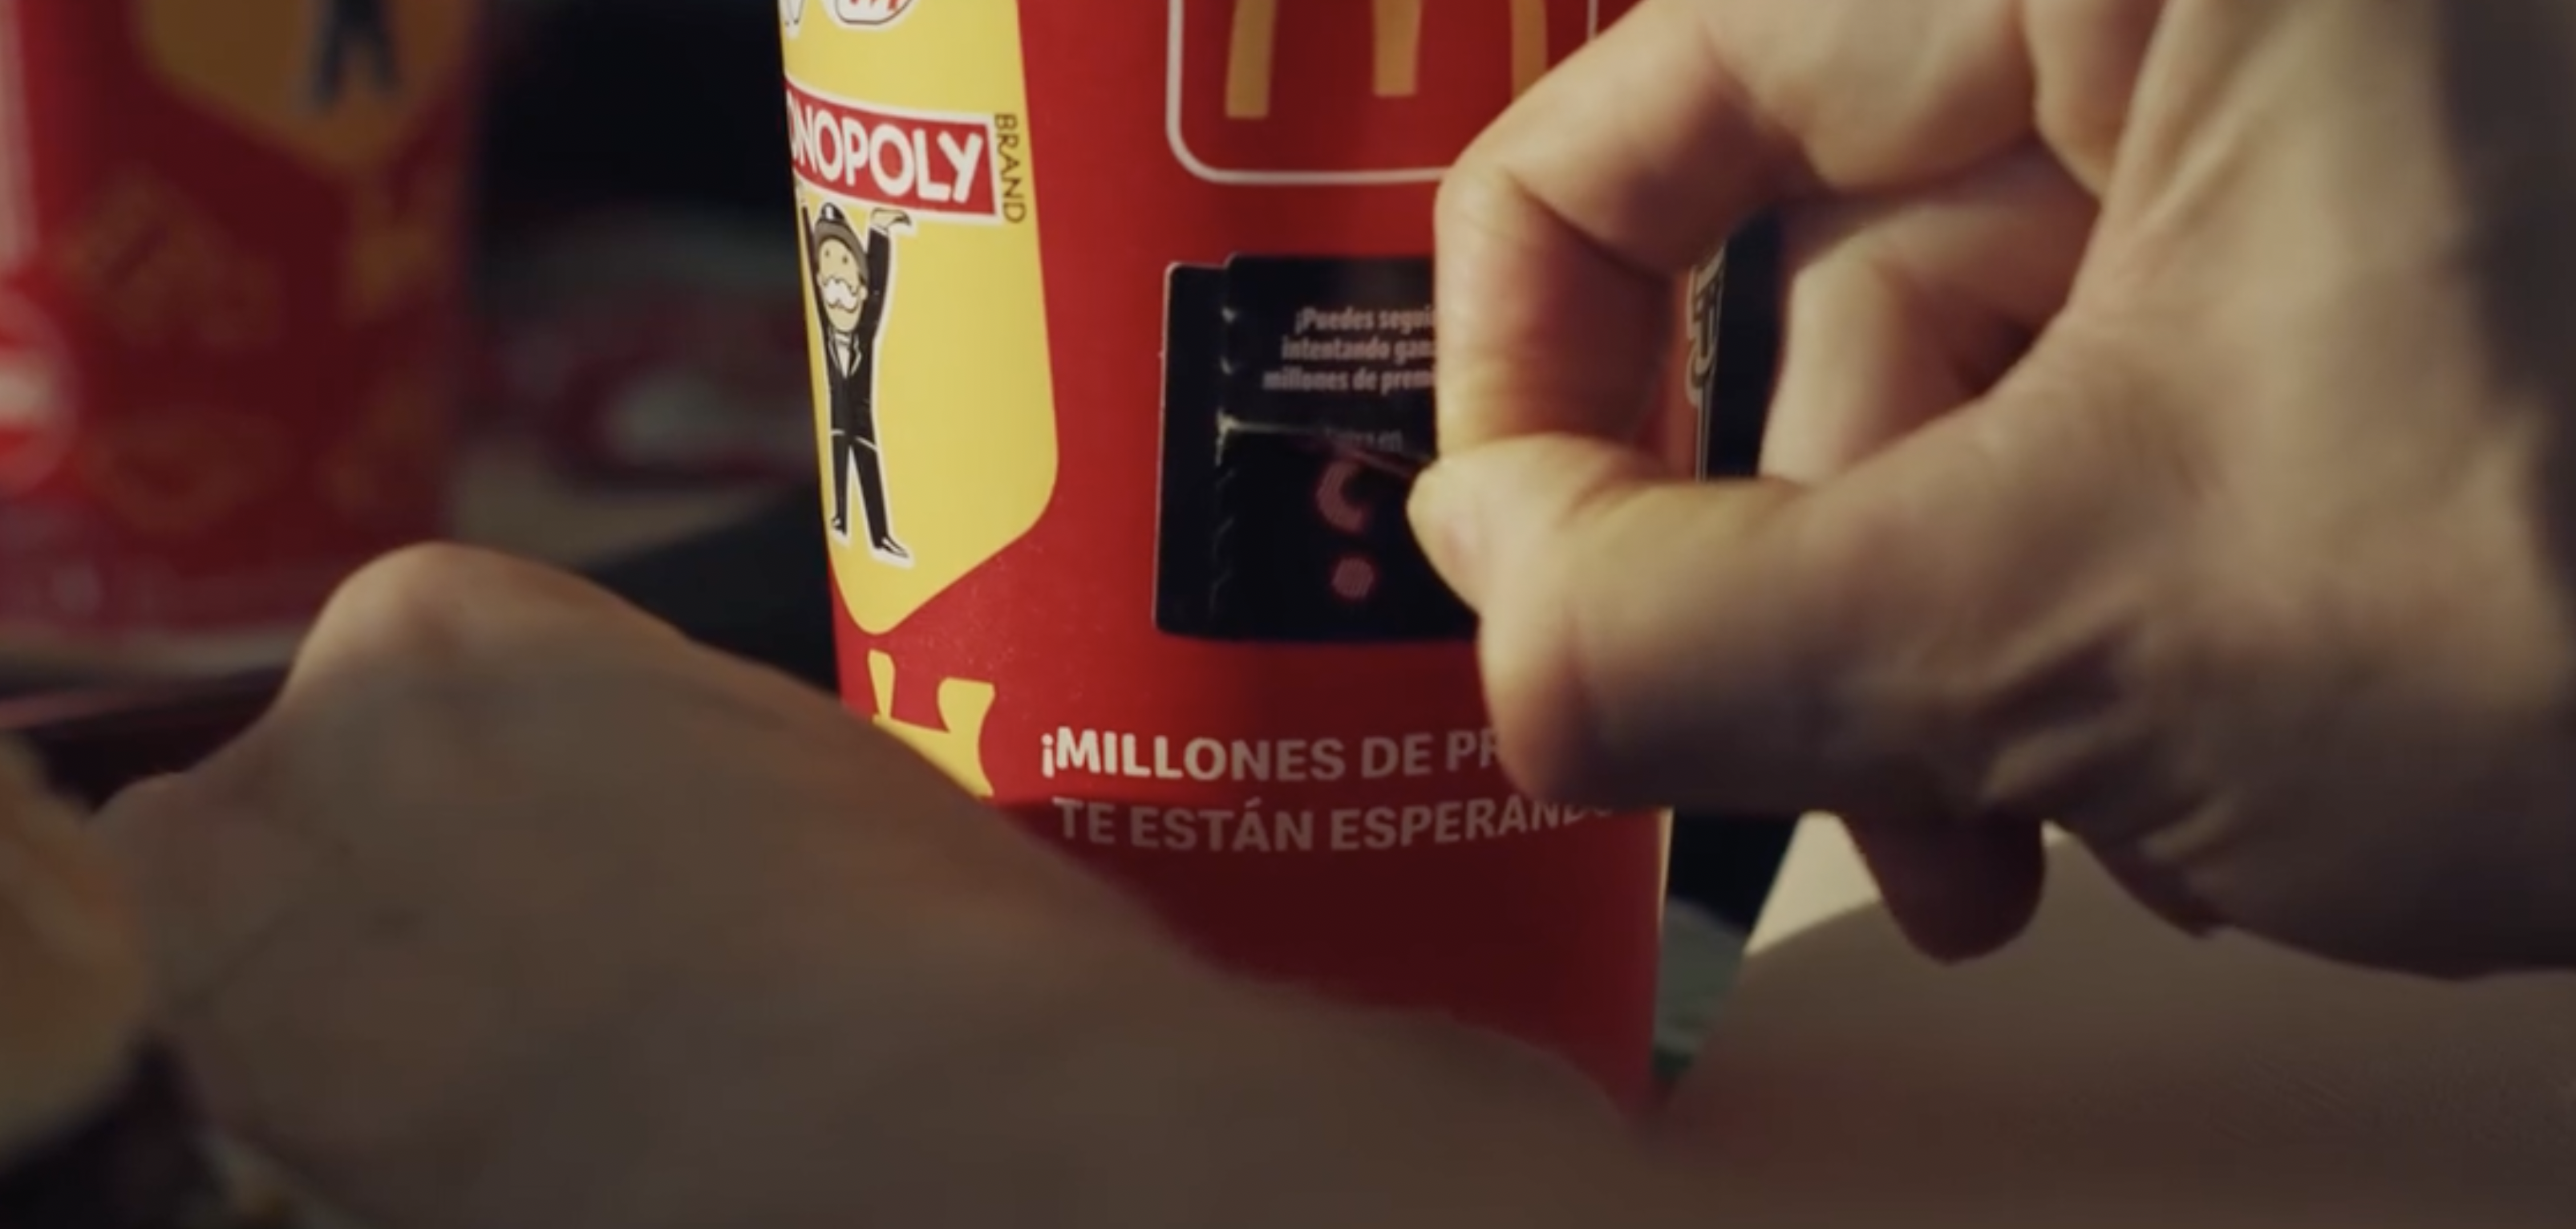 McDonald's y Monopoly lanzan una promoción.